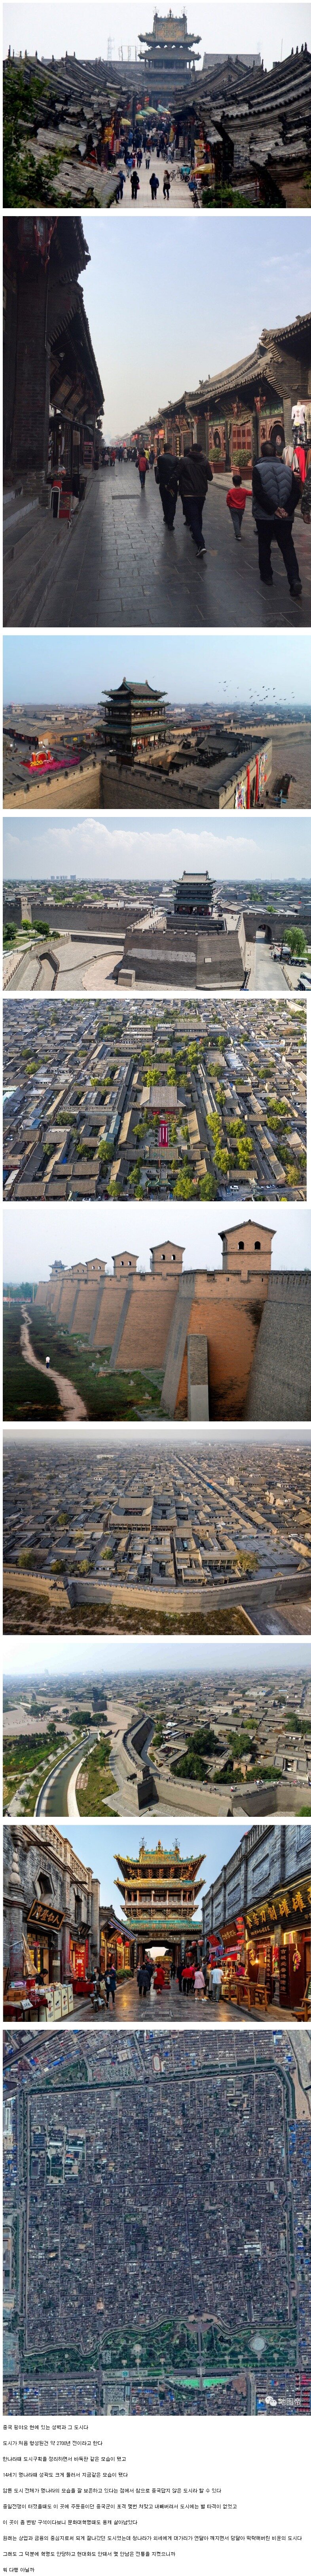 가장 중국다우면서도 중국답지 않은 도시